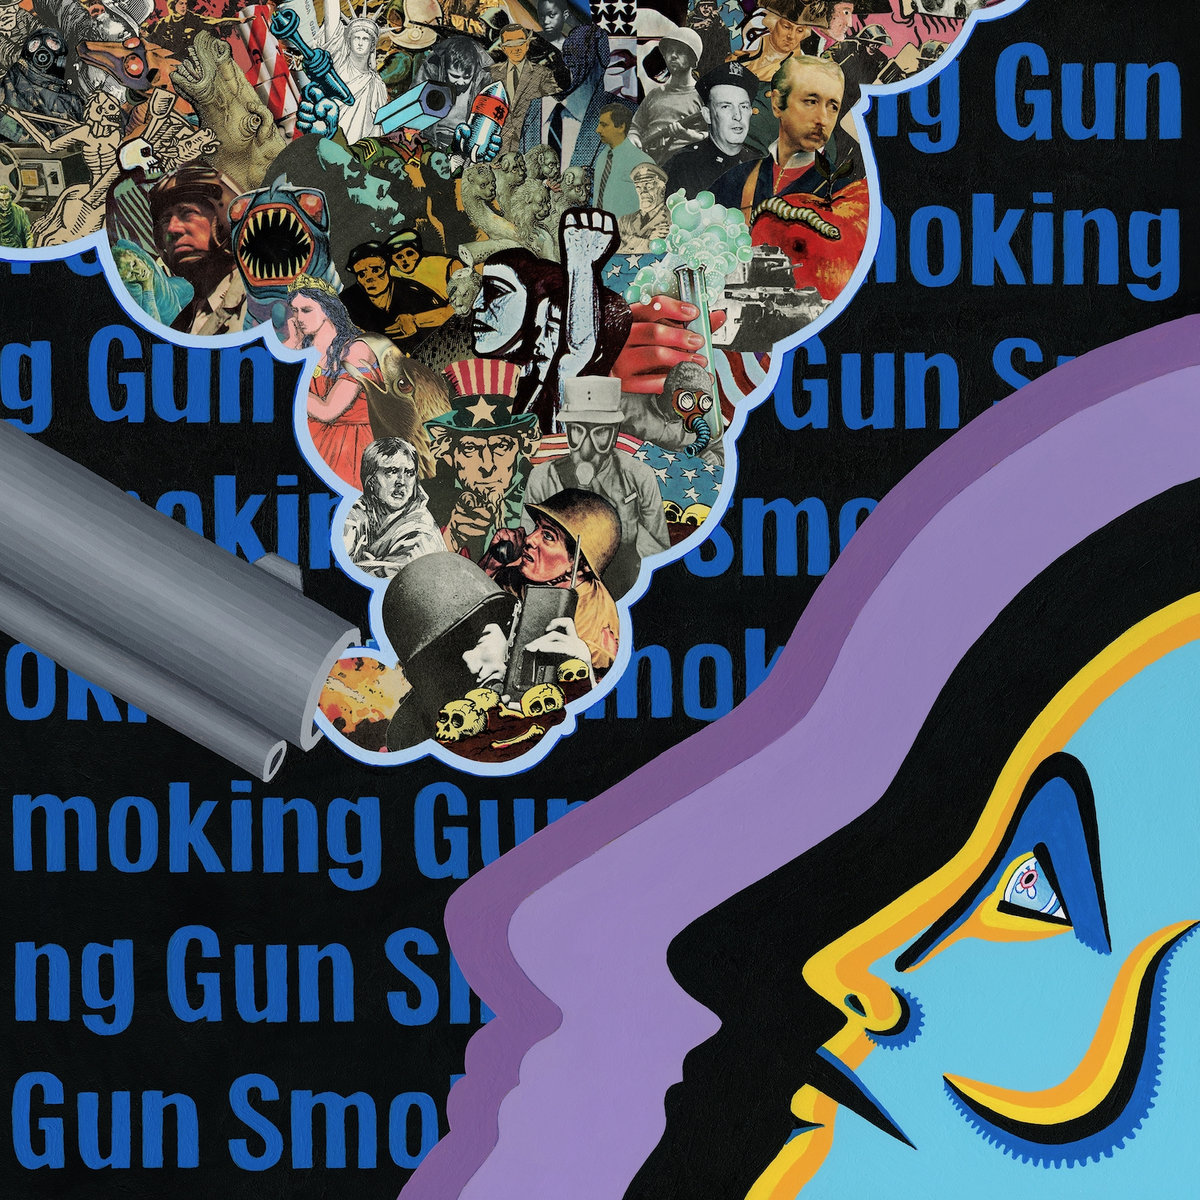 Smoking_gun_deca